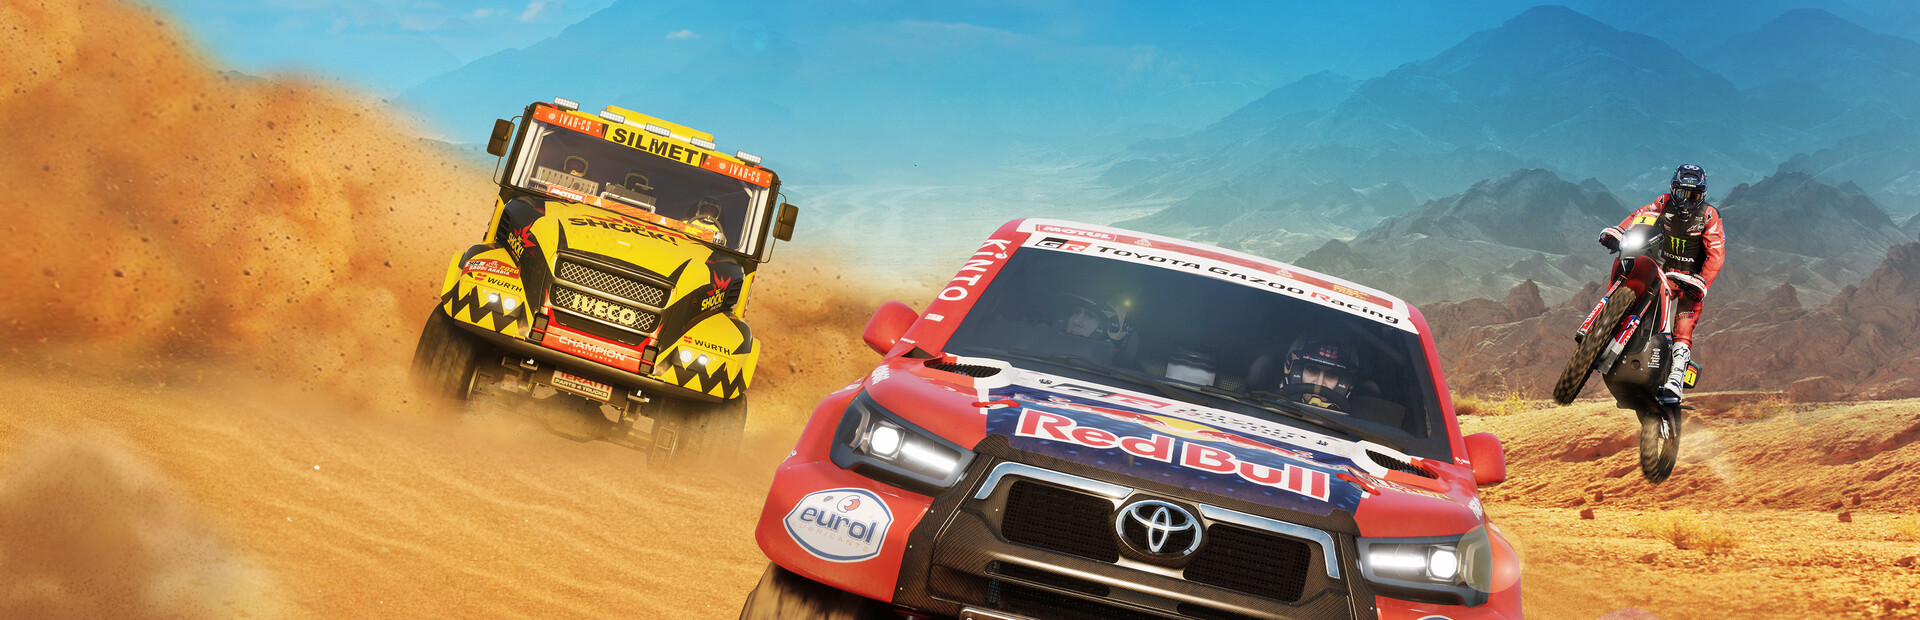 Dakar Desert Rally cover image